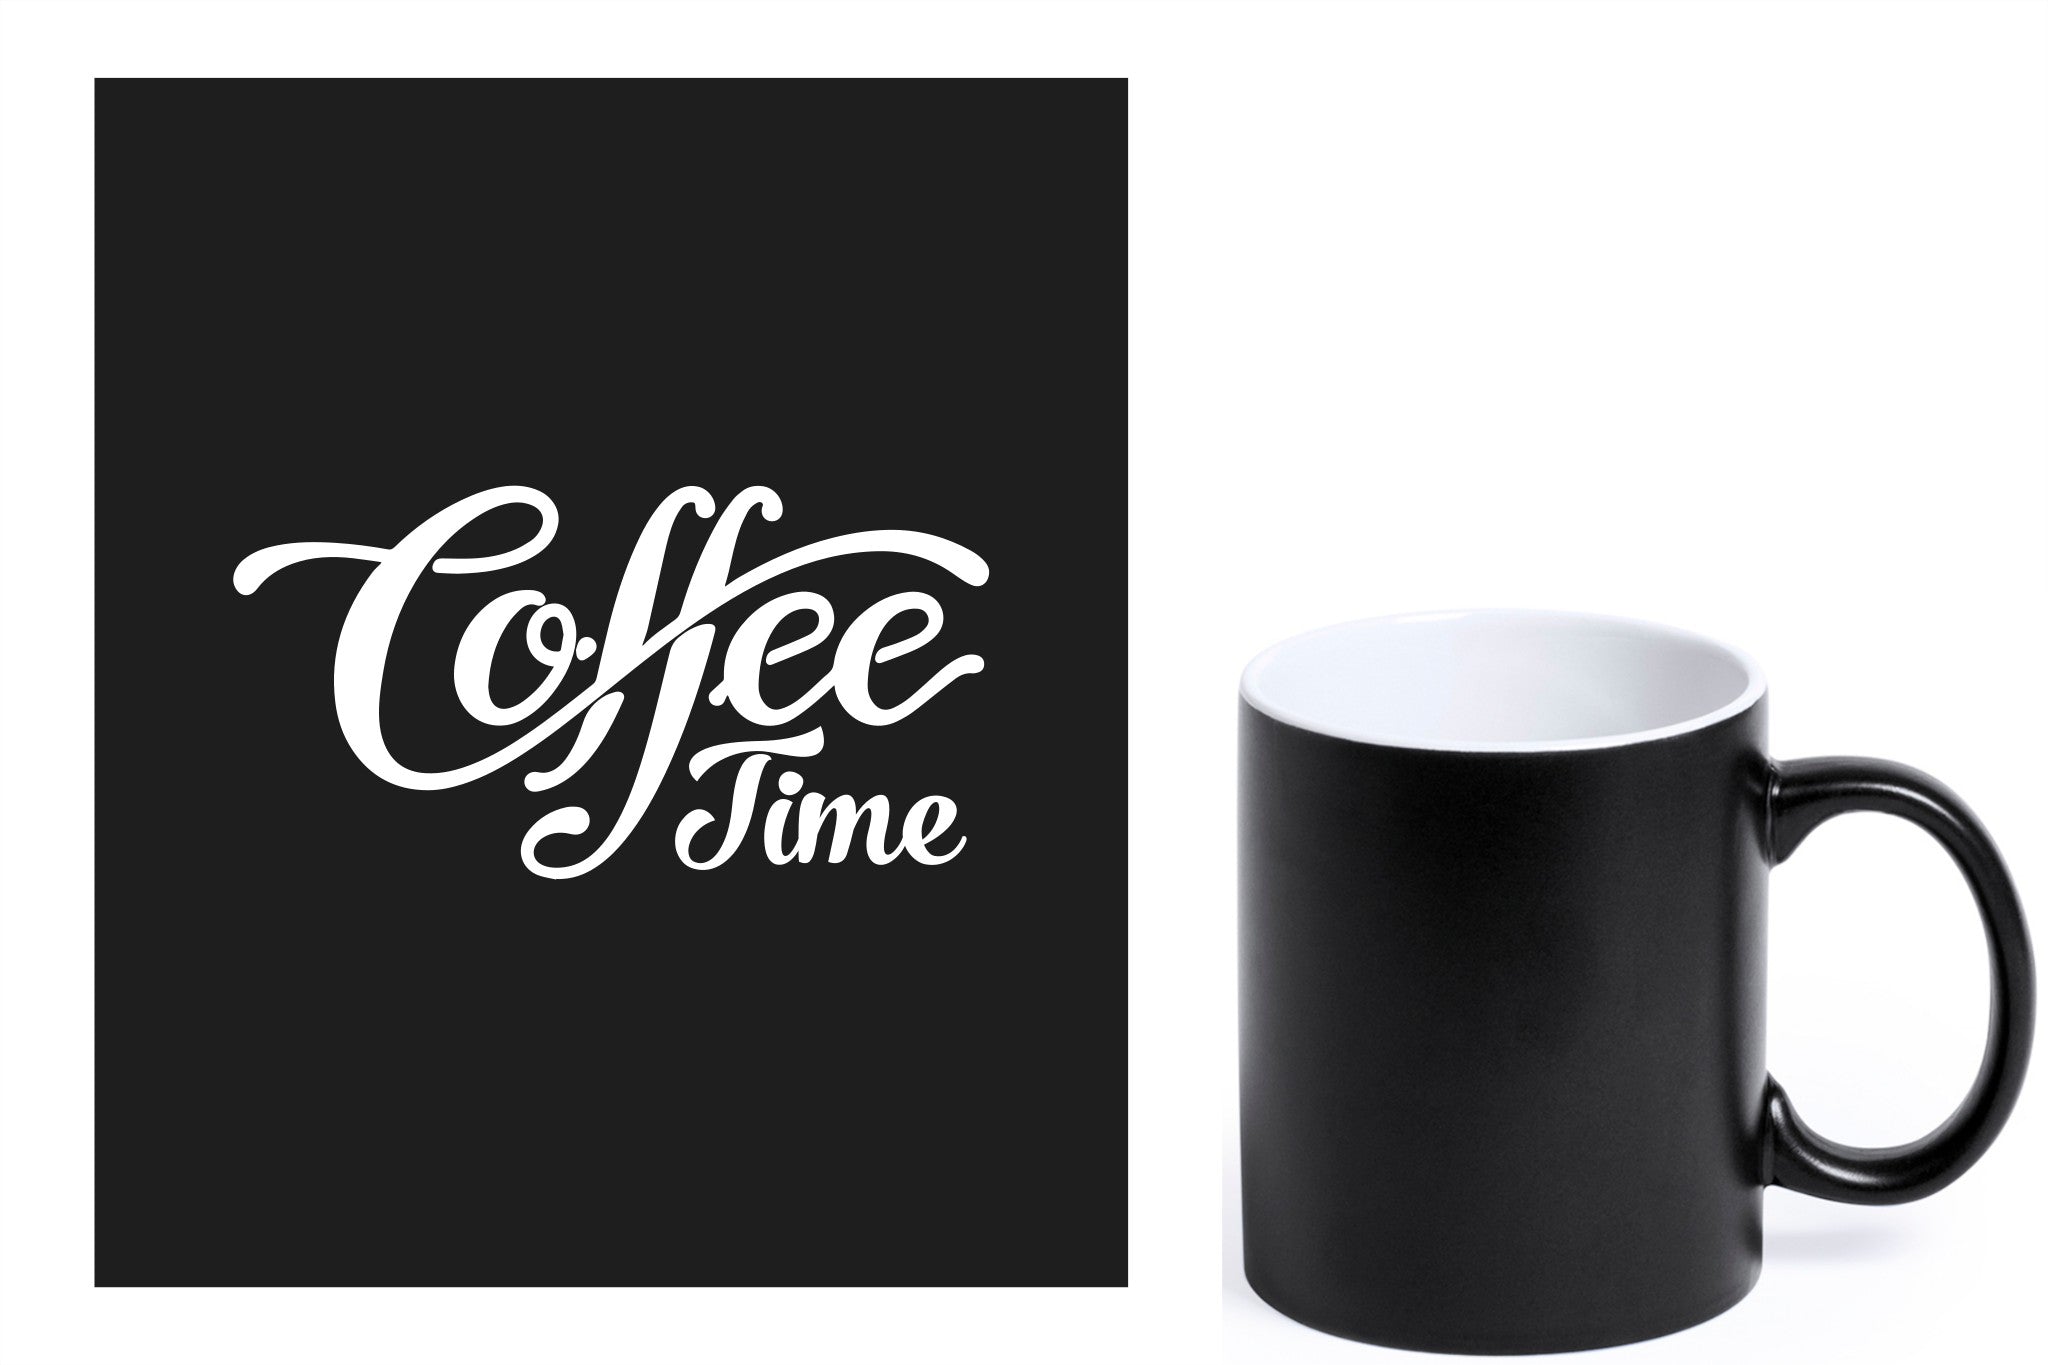 zwarte keramische mok met witte gravure  'Coffee time'.